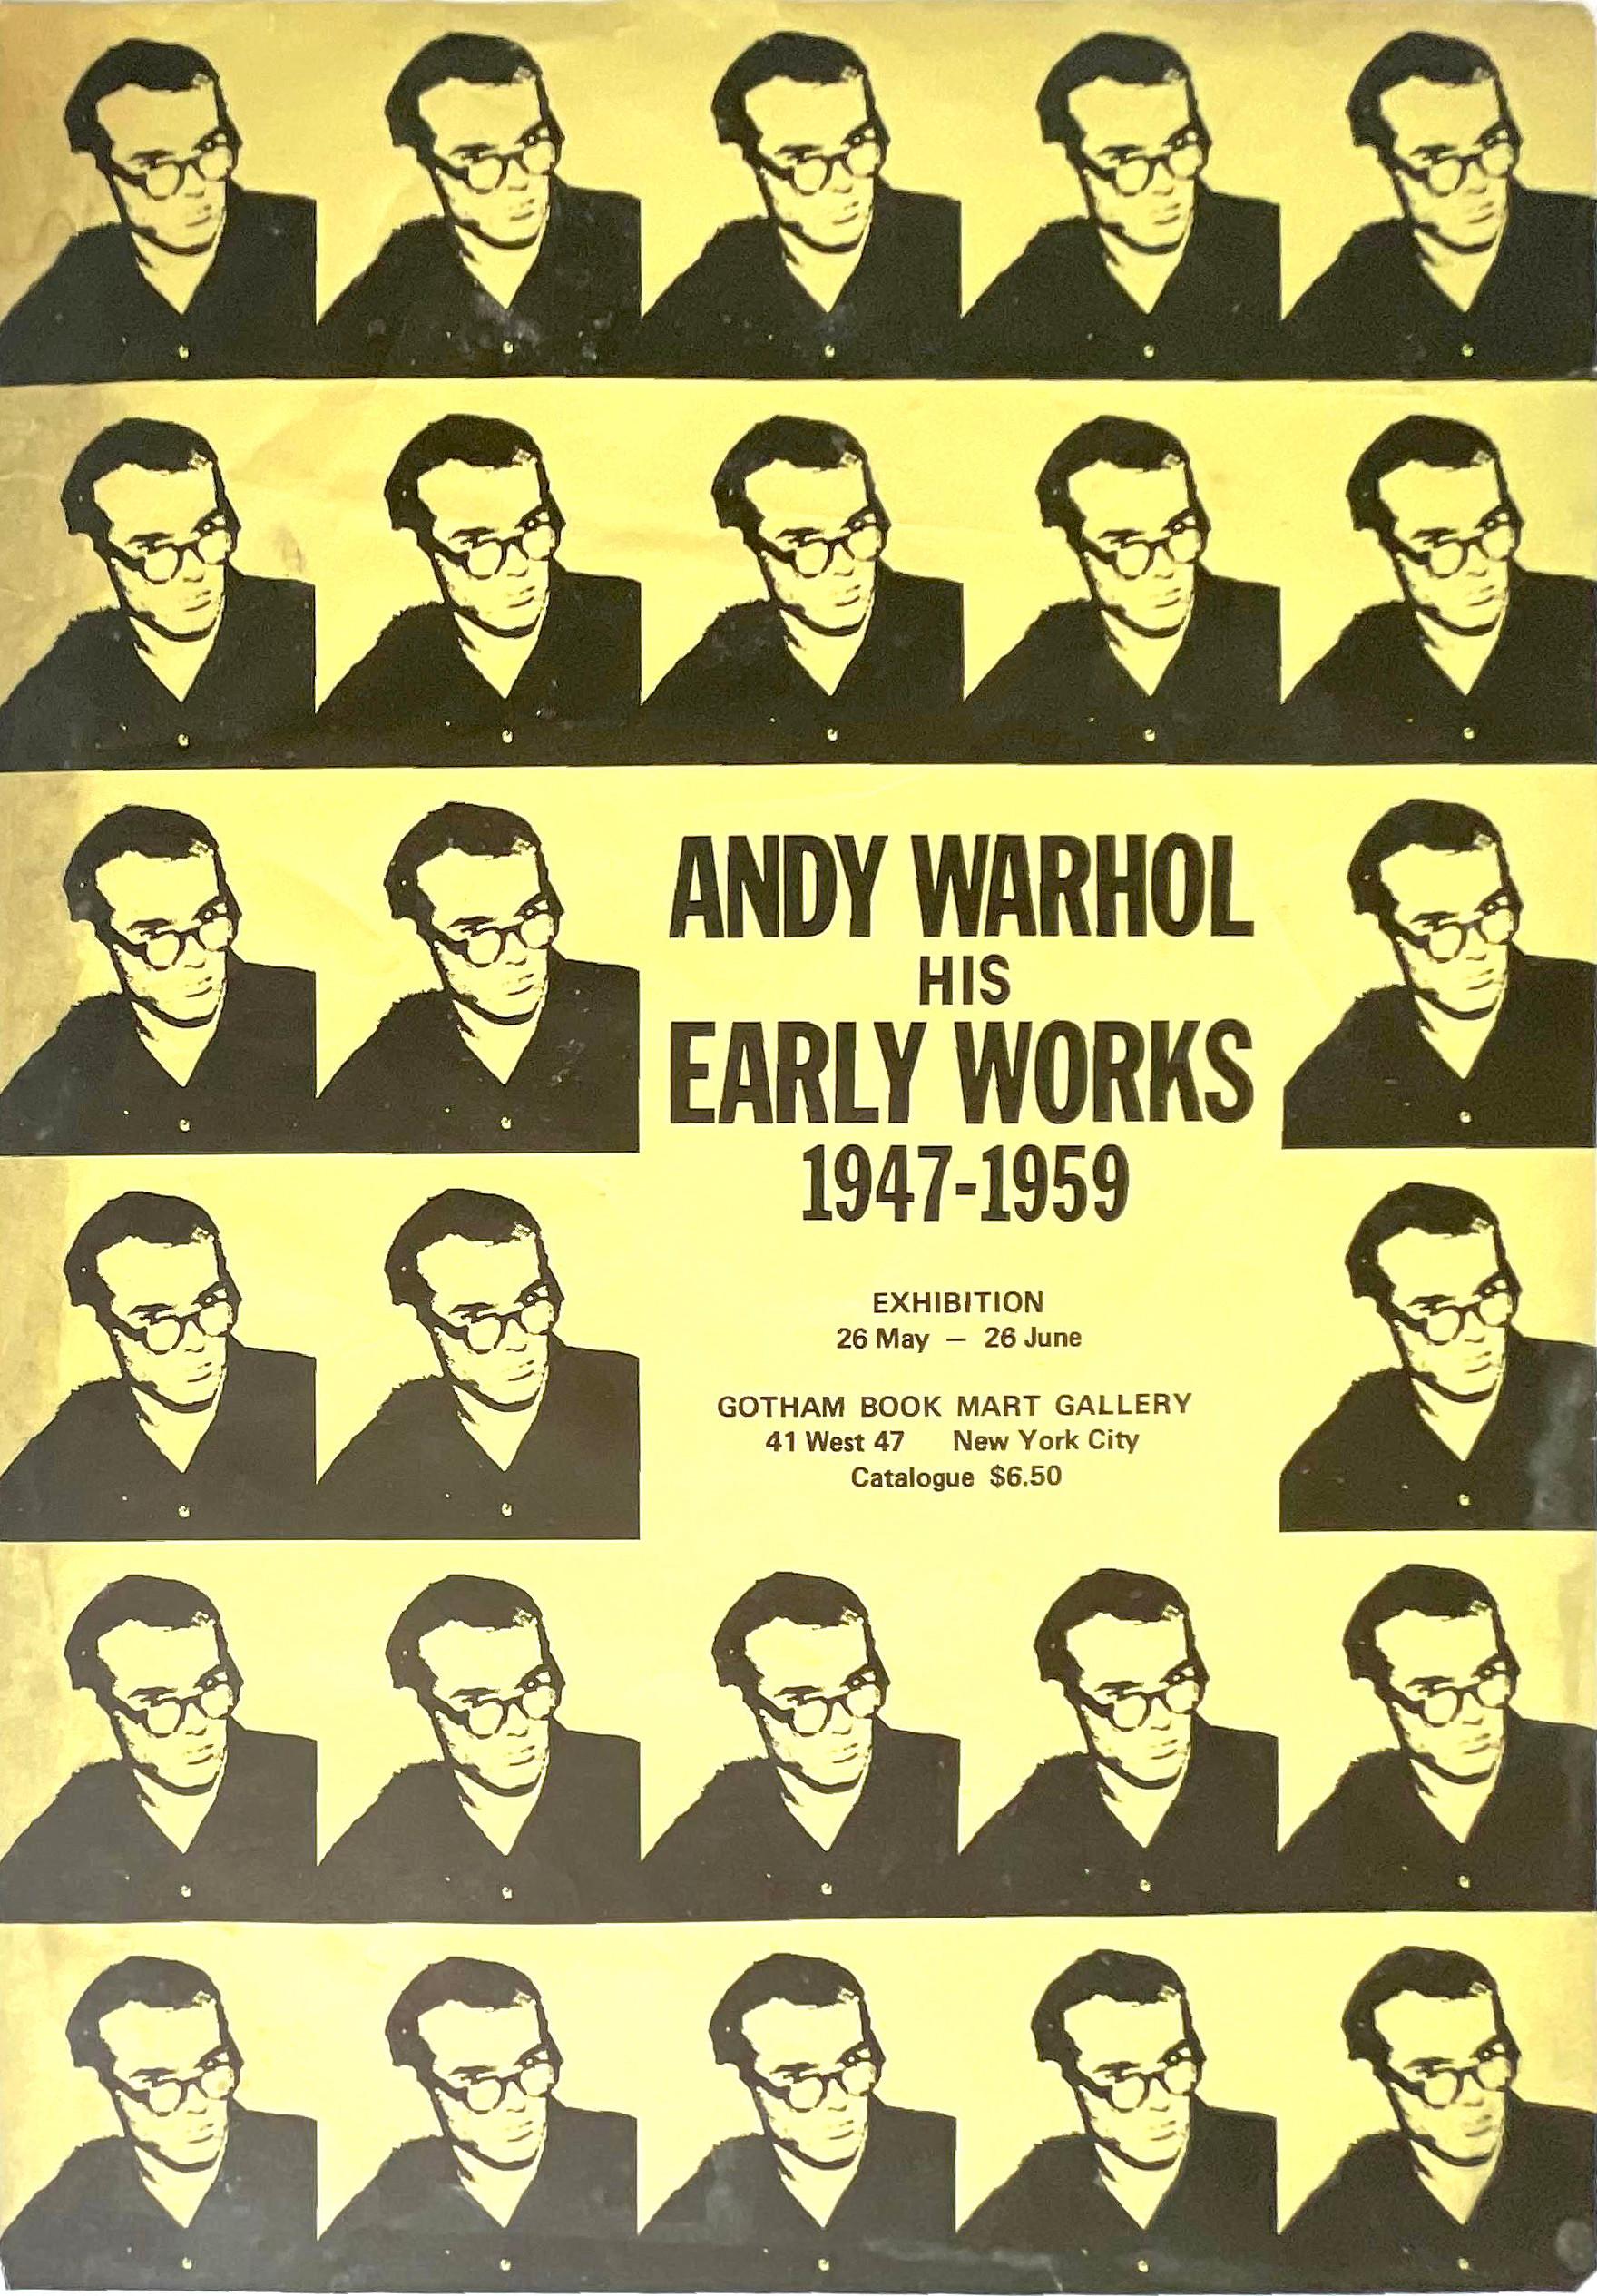 Andy Warhol
Seltene Breitseite zur Gotham Bookmart-Ausstellung "Andy Warhol His Early Works, 1947 - 1959", 1971
Offsetlithografie-Poster 
18 × 12 1/2 Zoll
Ungerahmt (nicht signiert)
Dieses Plakat wurde zu Warhols Lebzeiten unter seiner Aufsicht und